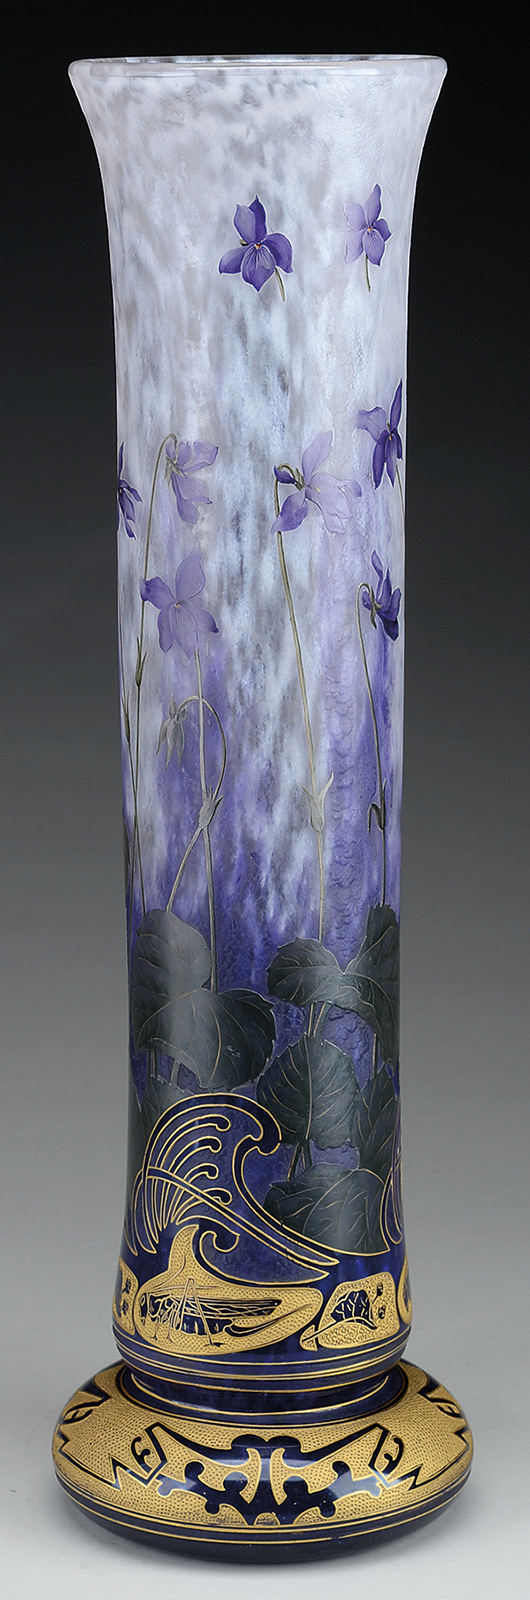 Lot #1020, a Daum Violet/Locust Vase estimated at $25,000-35,000.